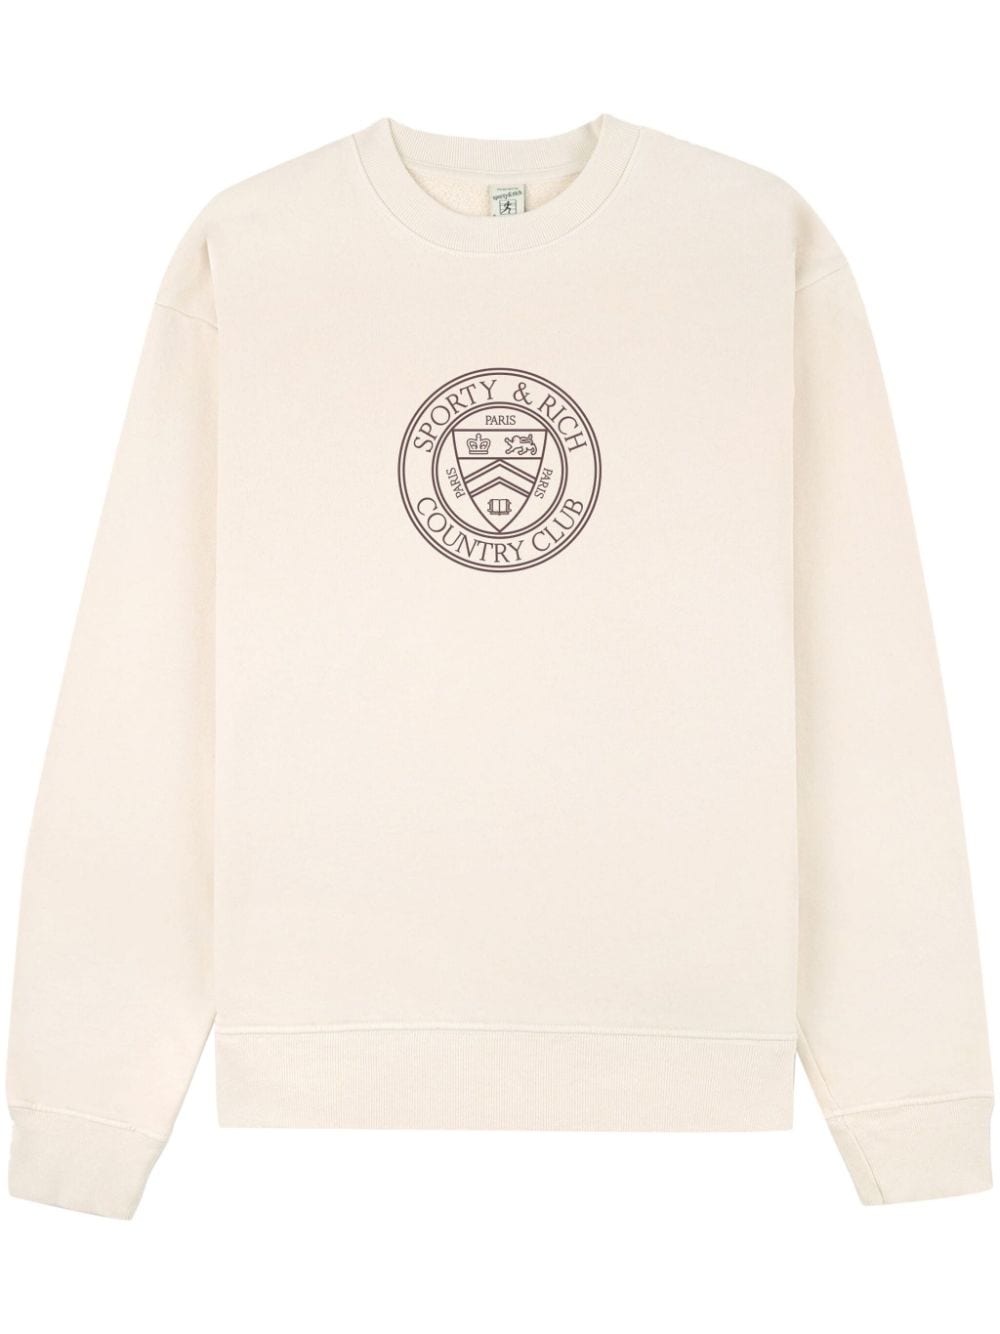 Sporty & Rich Connecticut Crest cotton sweatshirt - Neutrals von Sporty & Rich